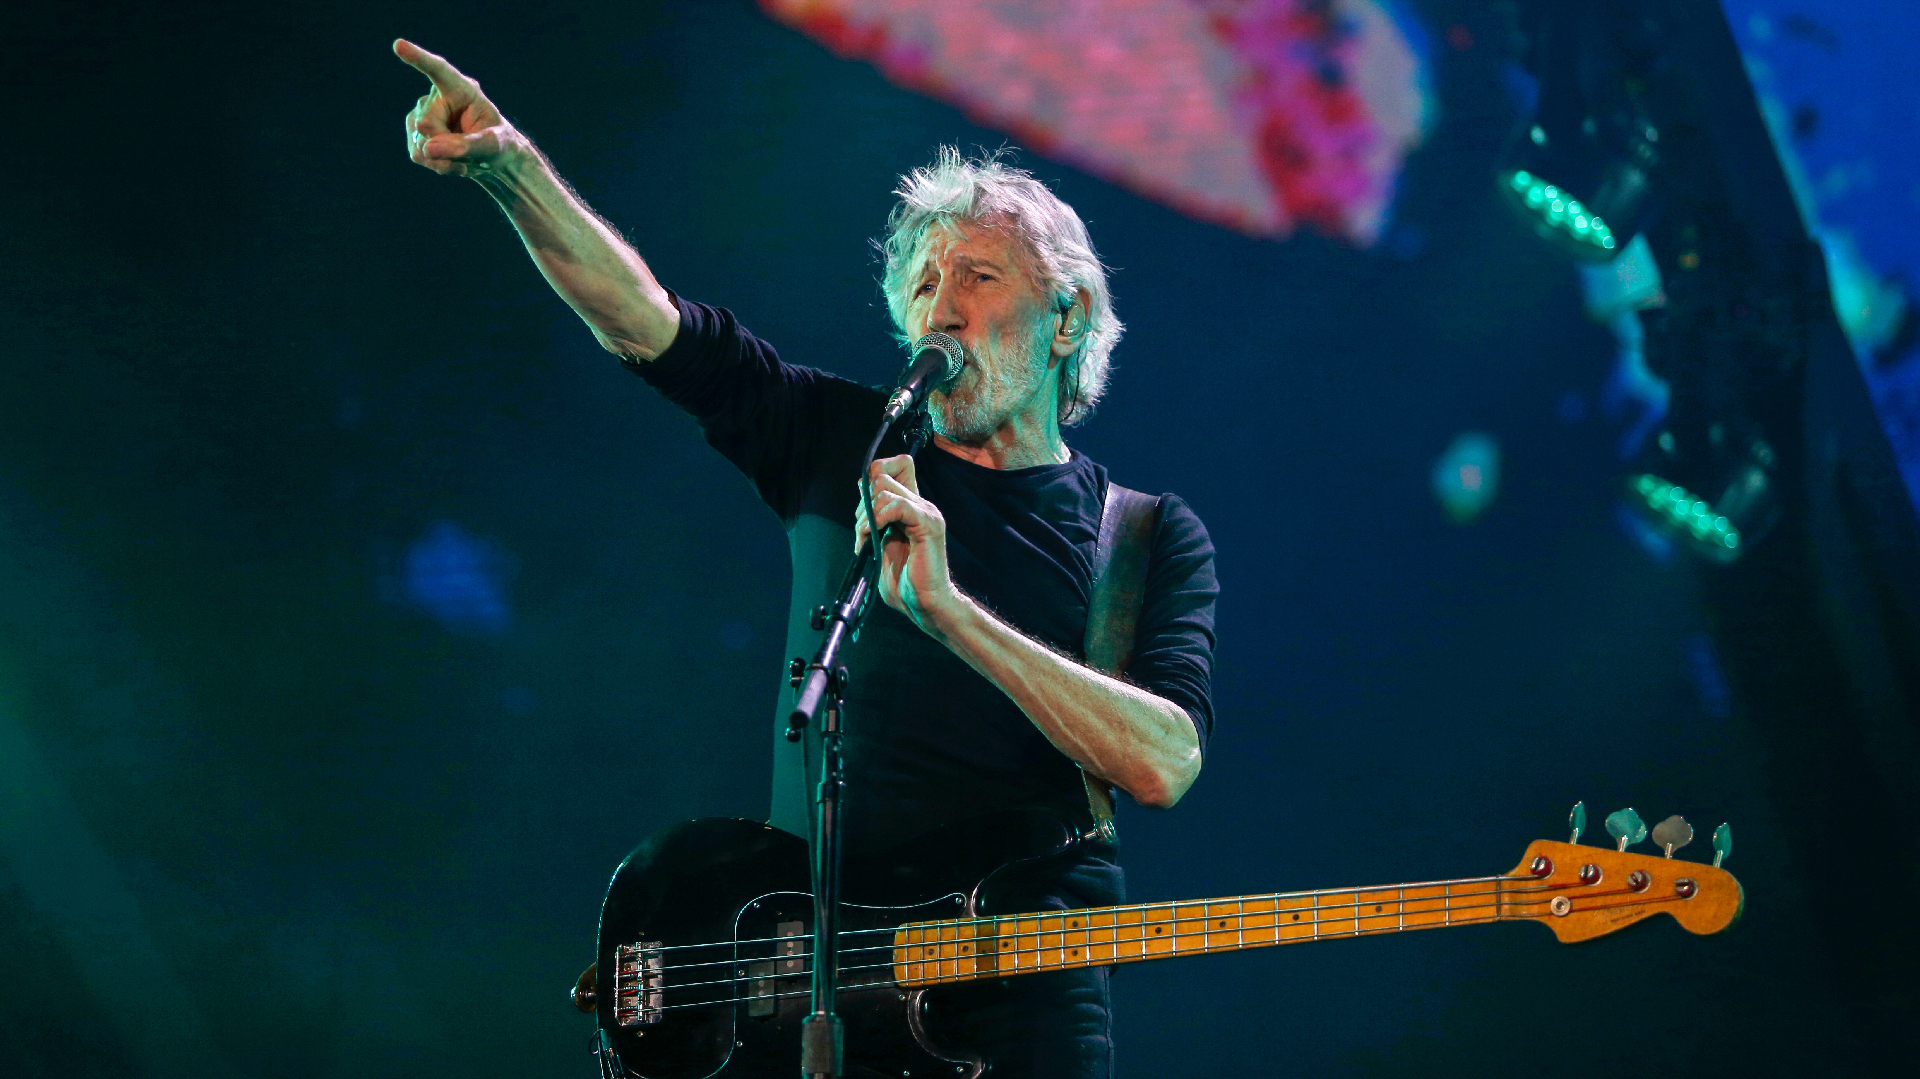 La obsesión por Malvinas, el compromiso con los derechos humanos y la búsqueda de un récord: los vínculos de Roger Waters con Argentina